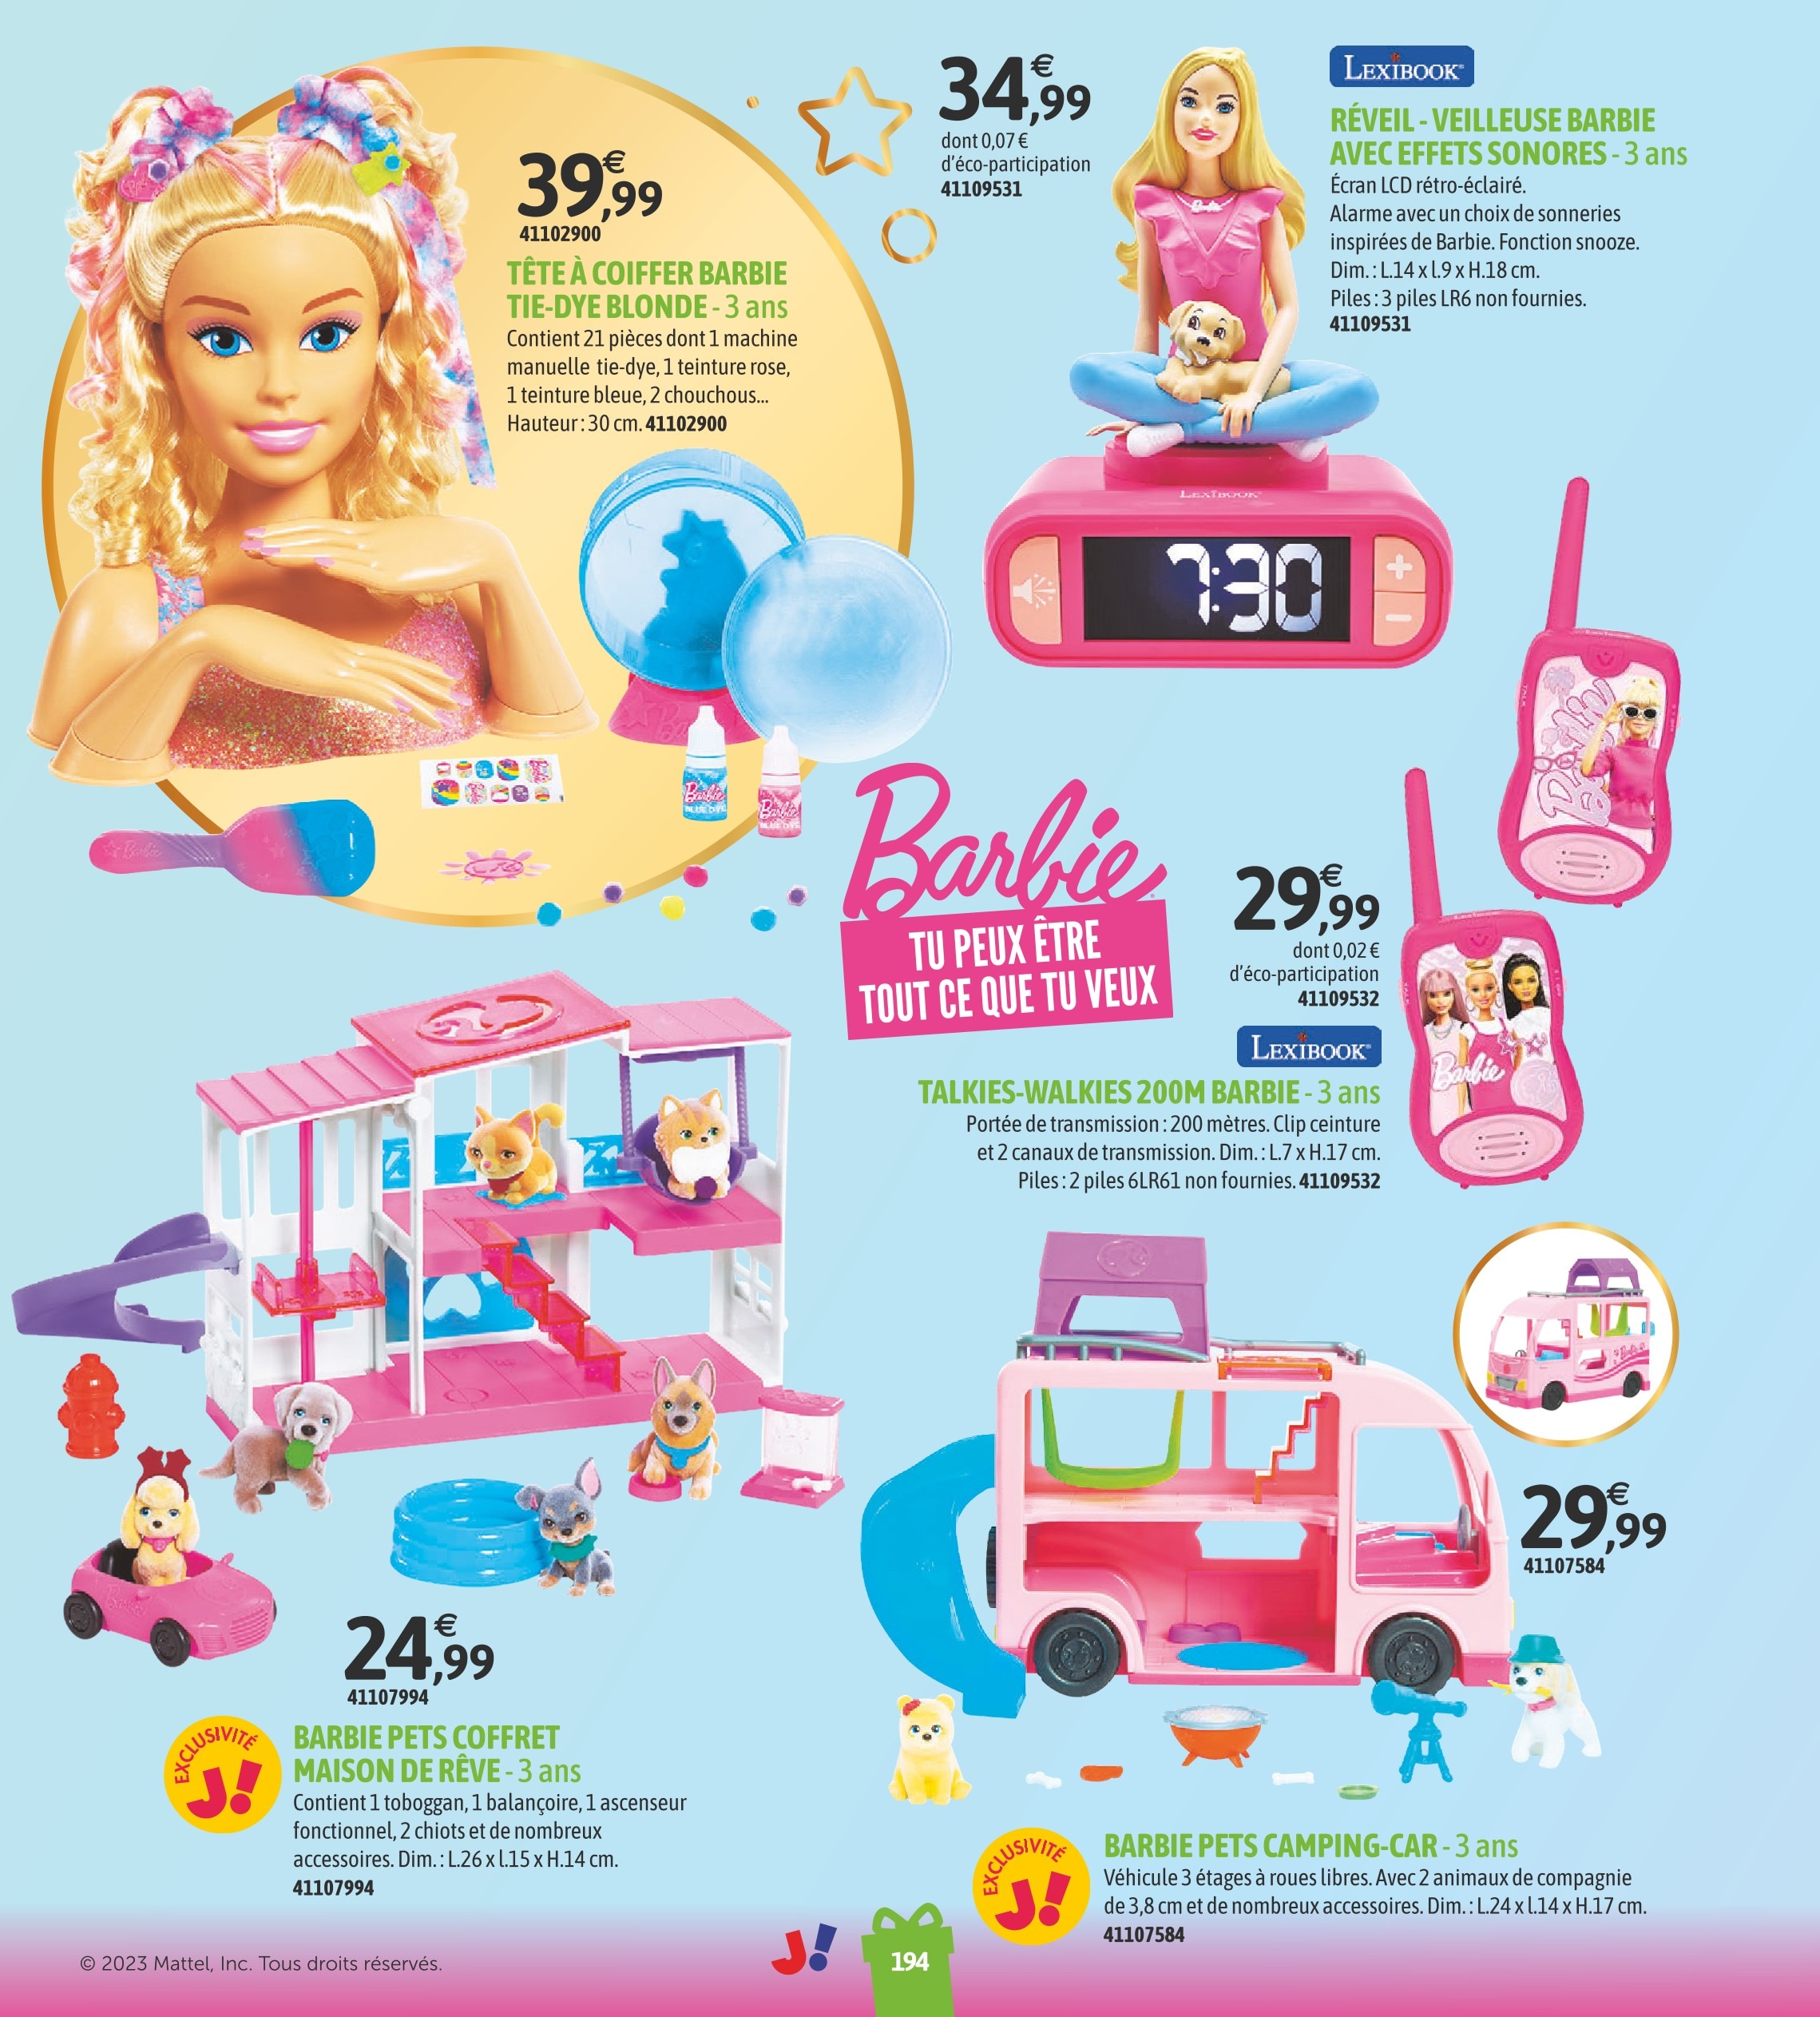 Promo Barbie tête à coiffer ultra chevelure chez Monoprix